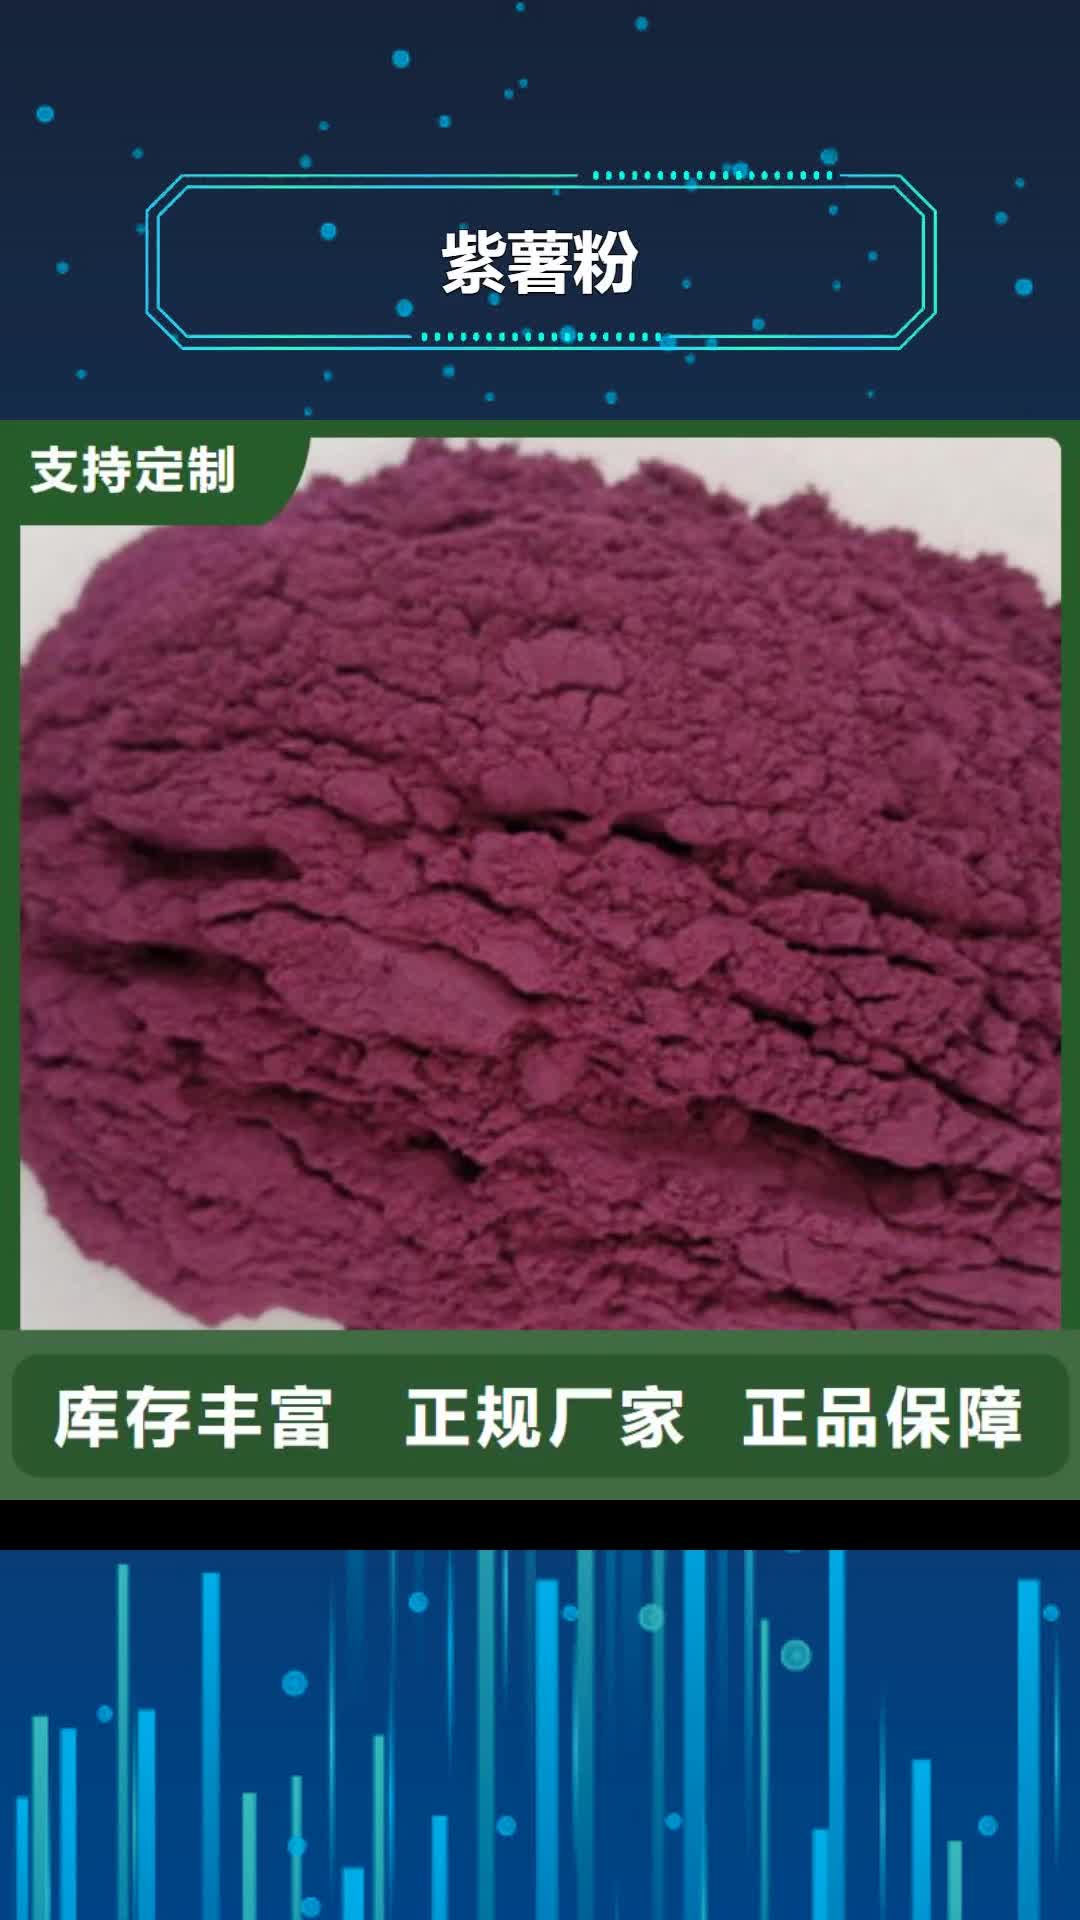 果洛【紫薯粉】红薯粉免费安装